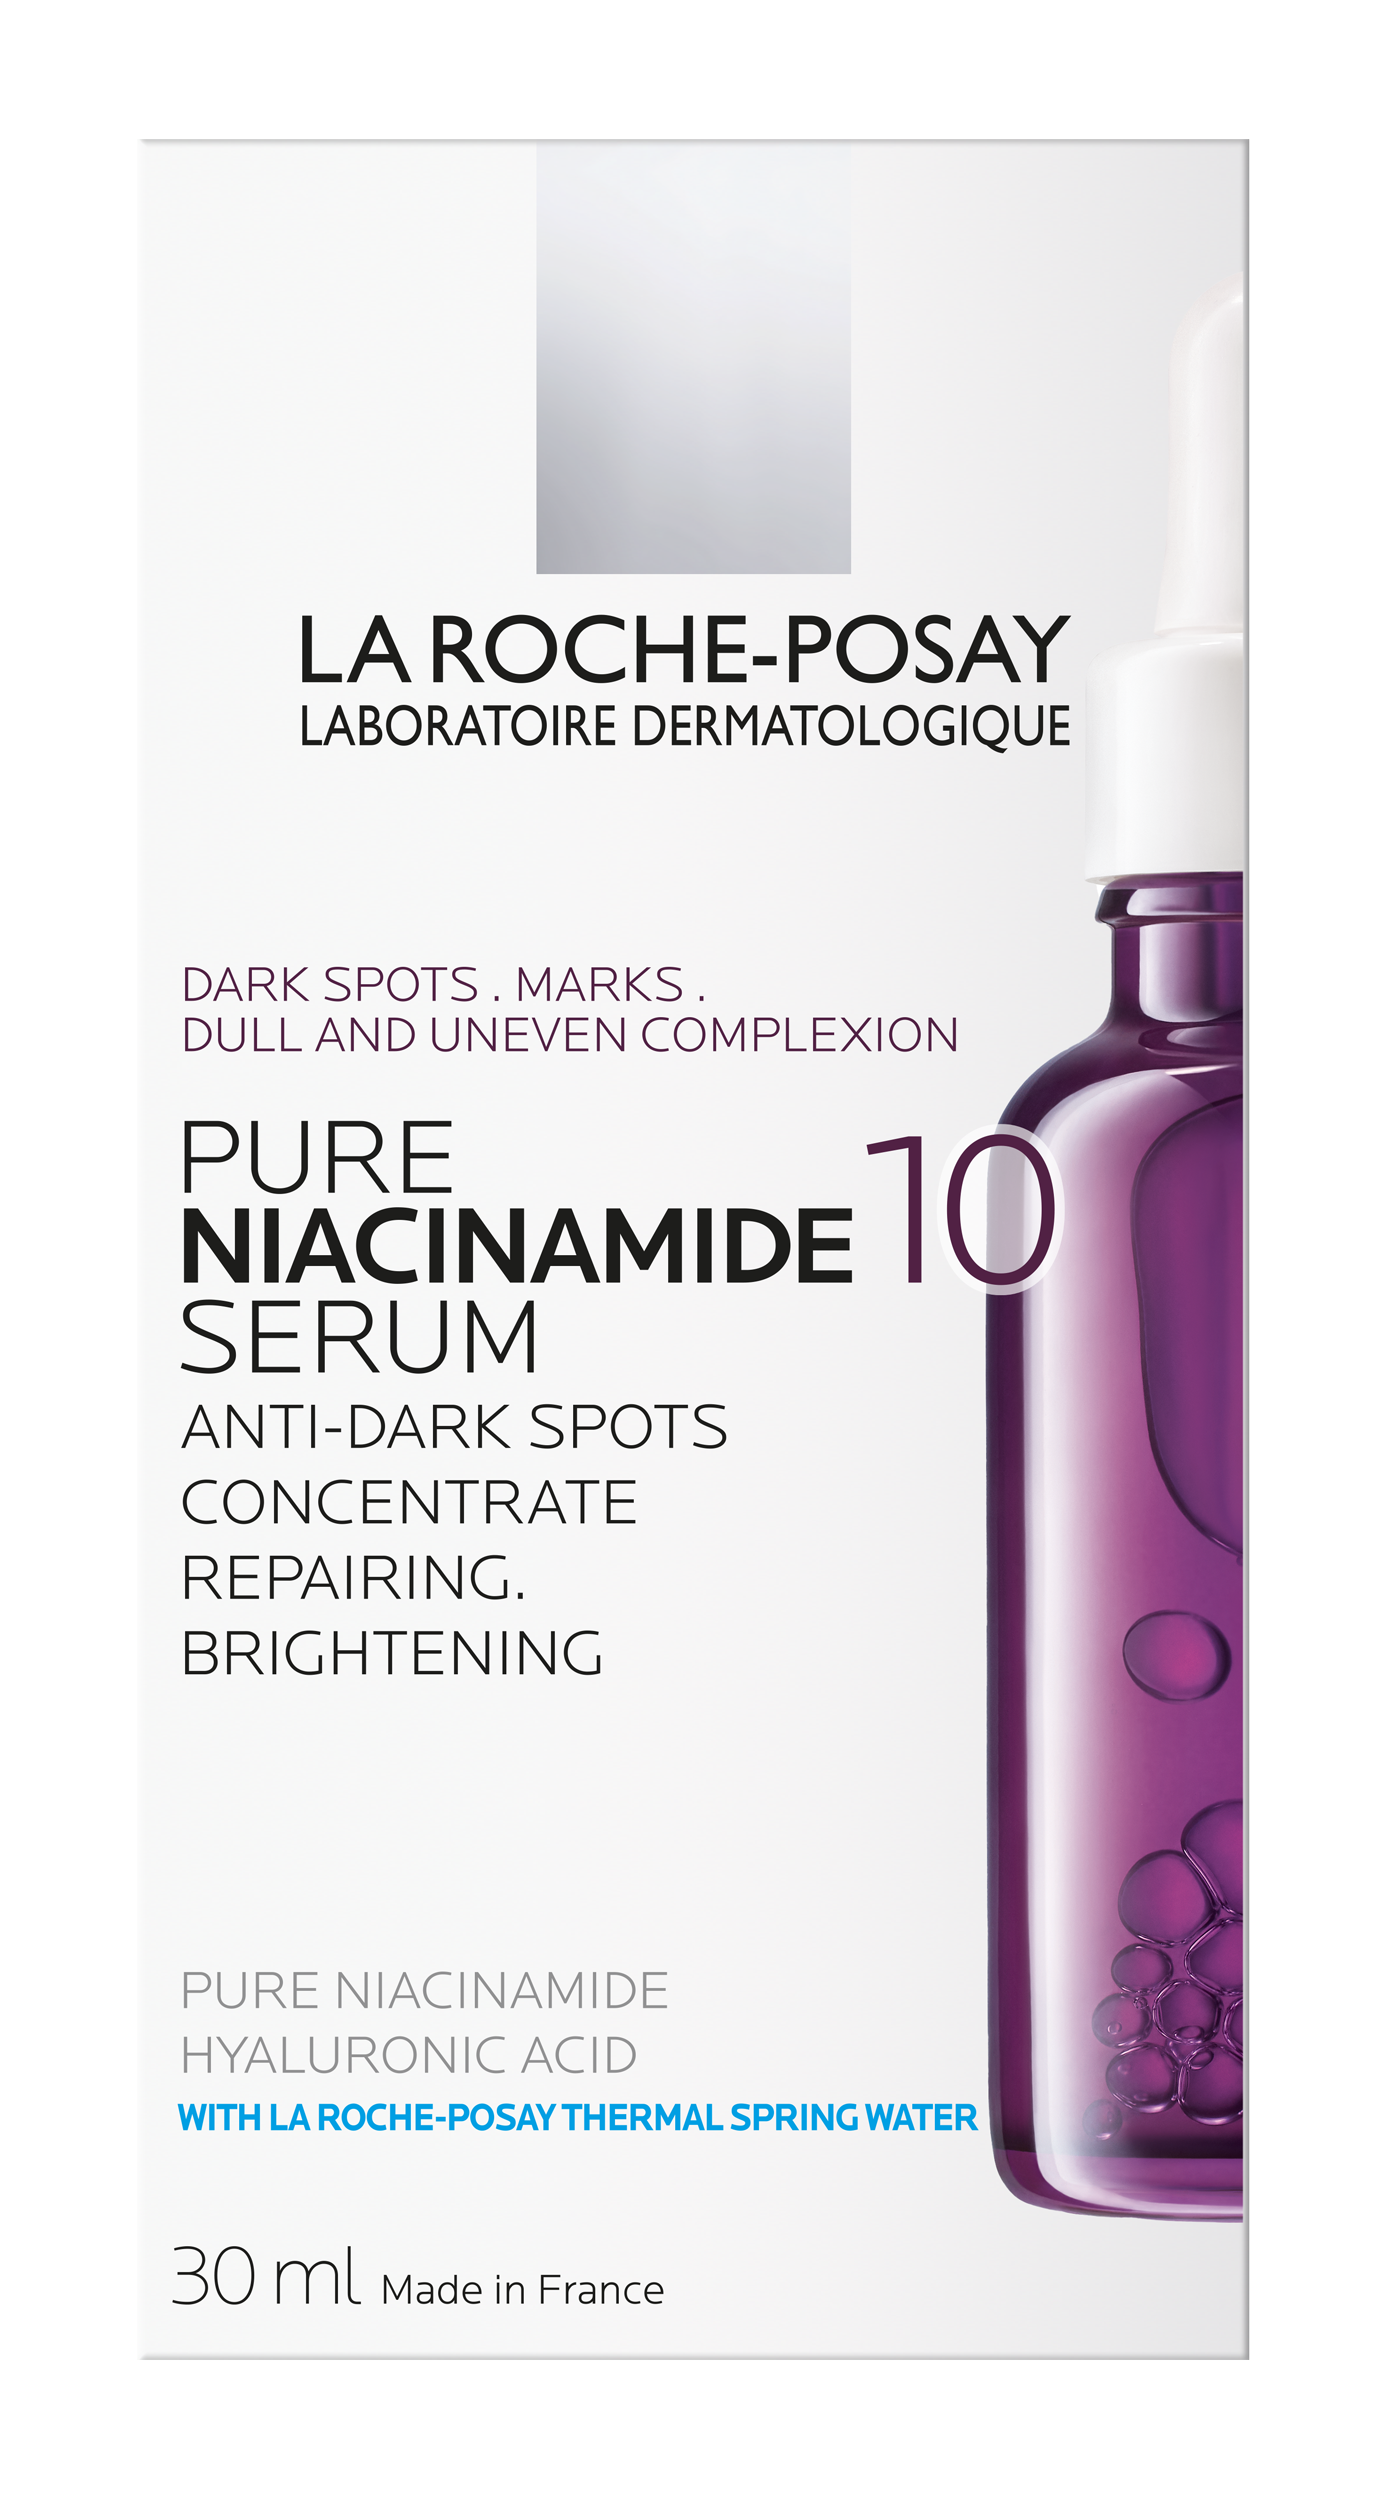 La Roche Posay Niacinamide Shop Store, Save 52% | jlcatj.gob.mx